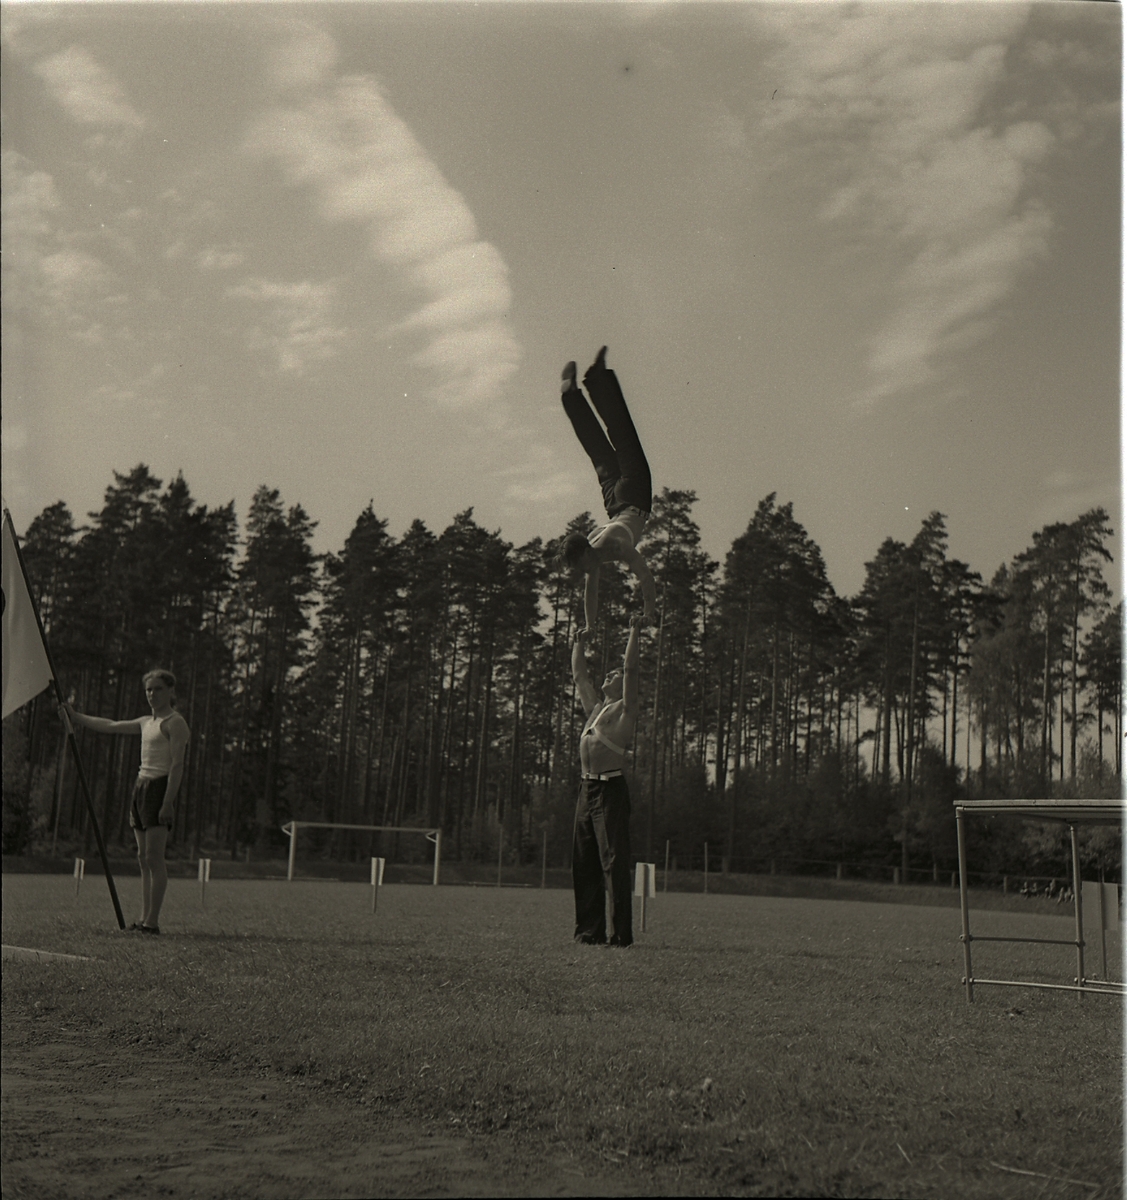 Gymnastikens dag, 27/5 1945.
Uppvisning av gymnastik på gräsplanen.